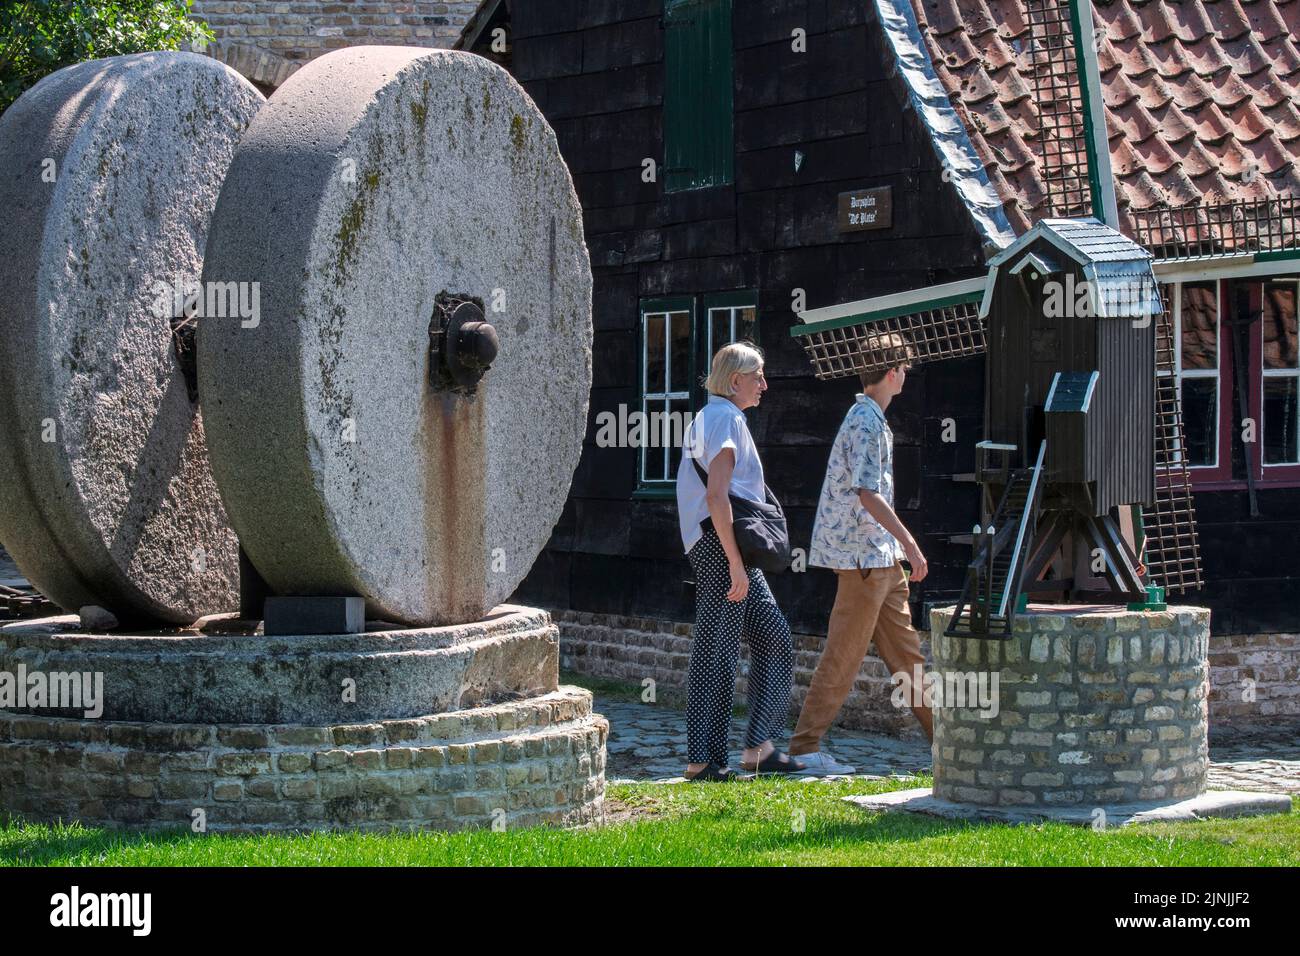 Pierres à moulin / pierres à moulin et touristes visitant le musée en plein air Bachten de Kupe, Izenberge, Flandre Occidentale, Belgique Banque D'Images